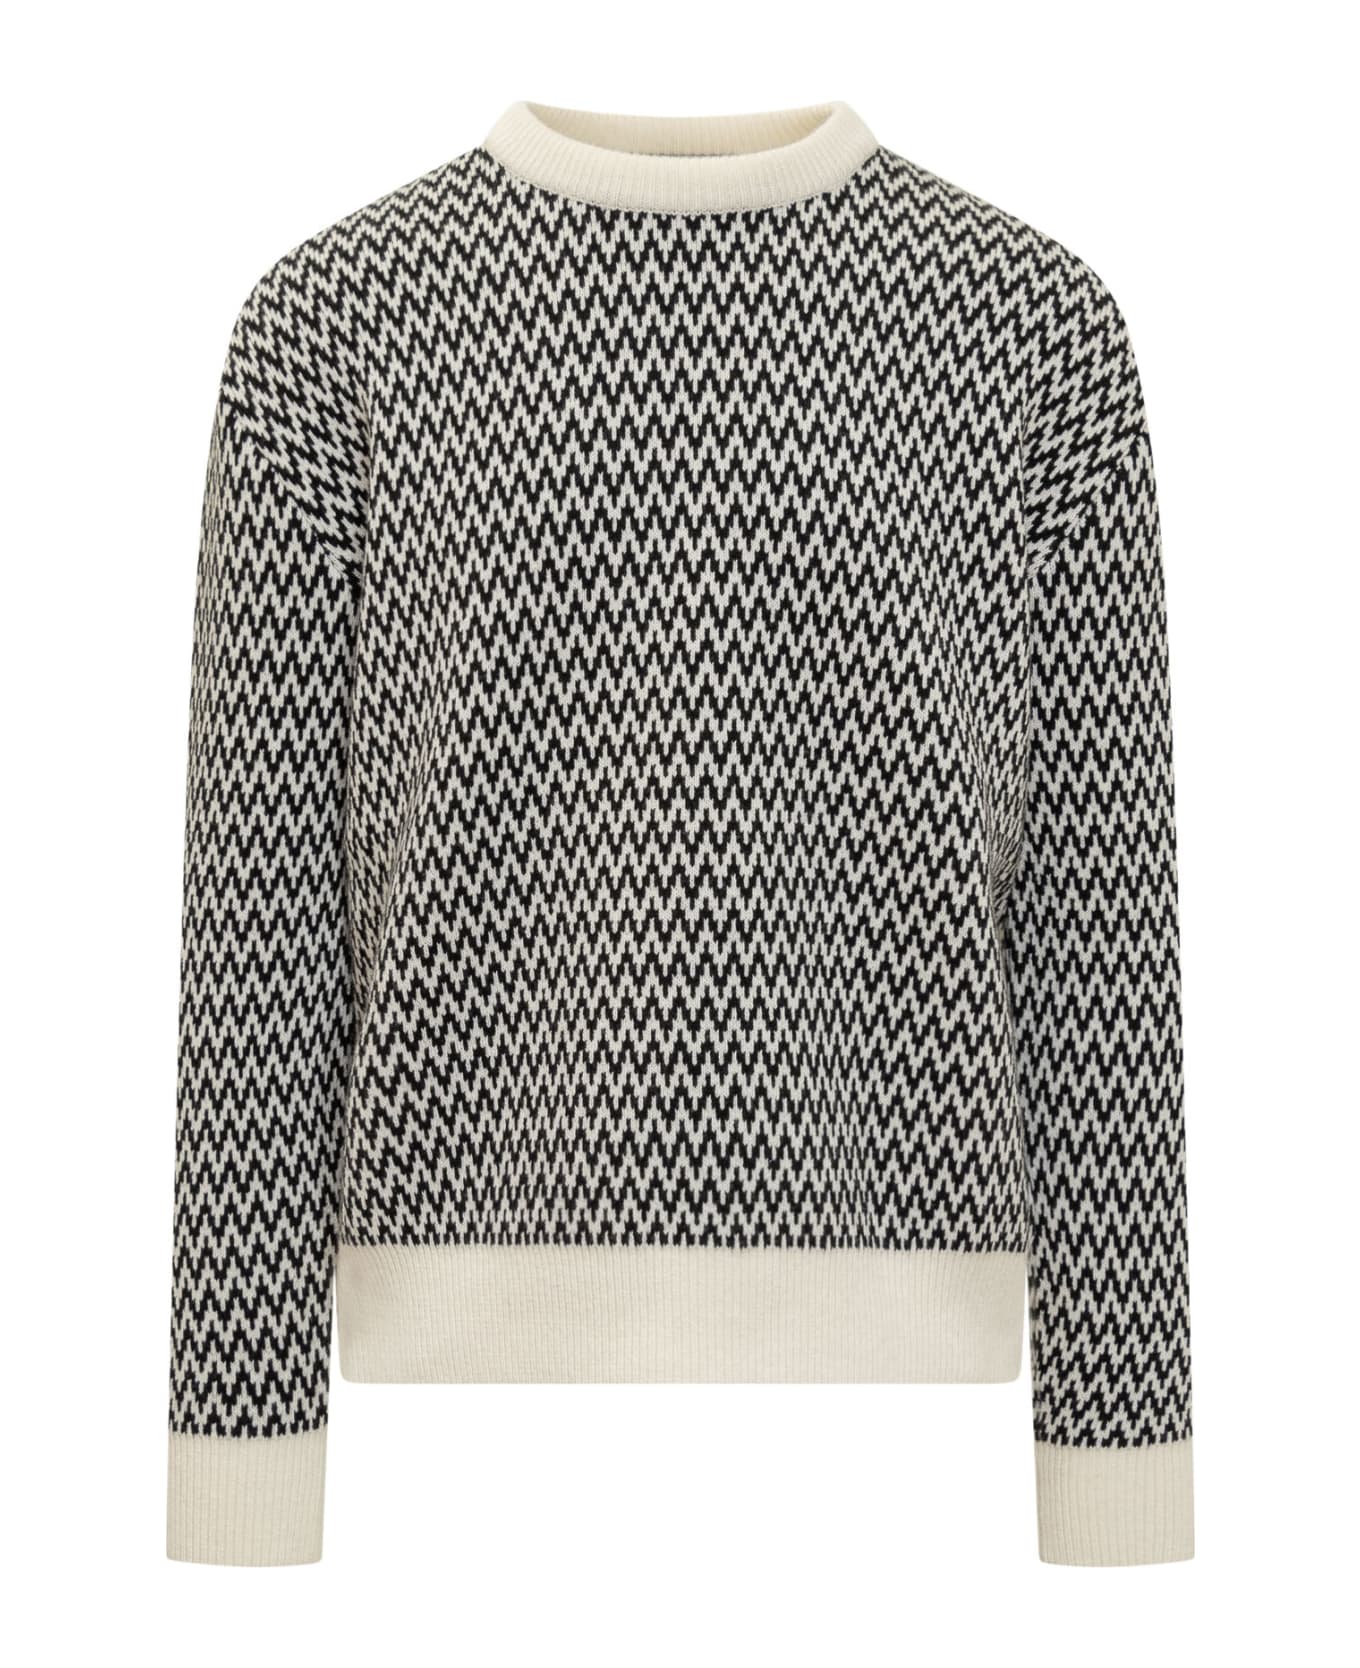 Lanvin Curb Sweater - Black Ecru